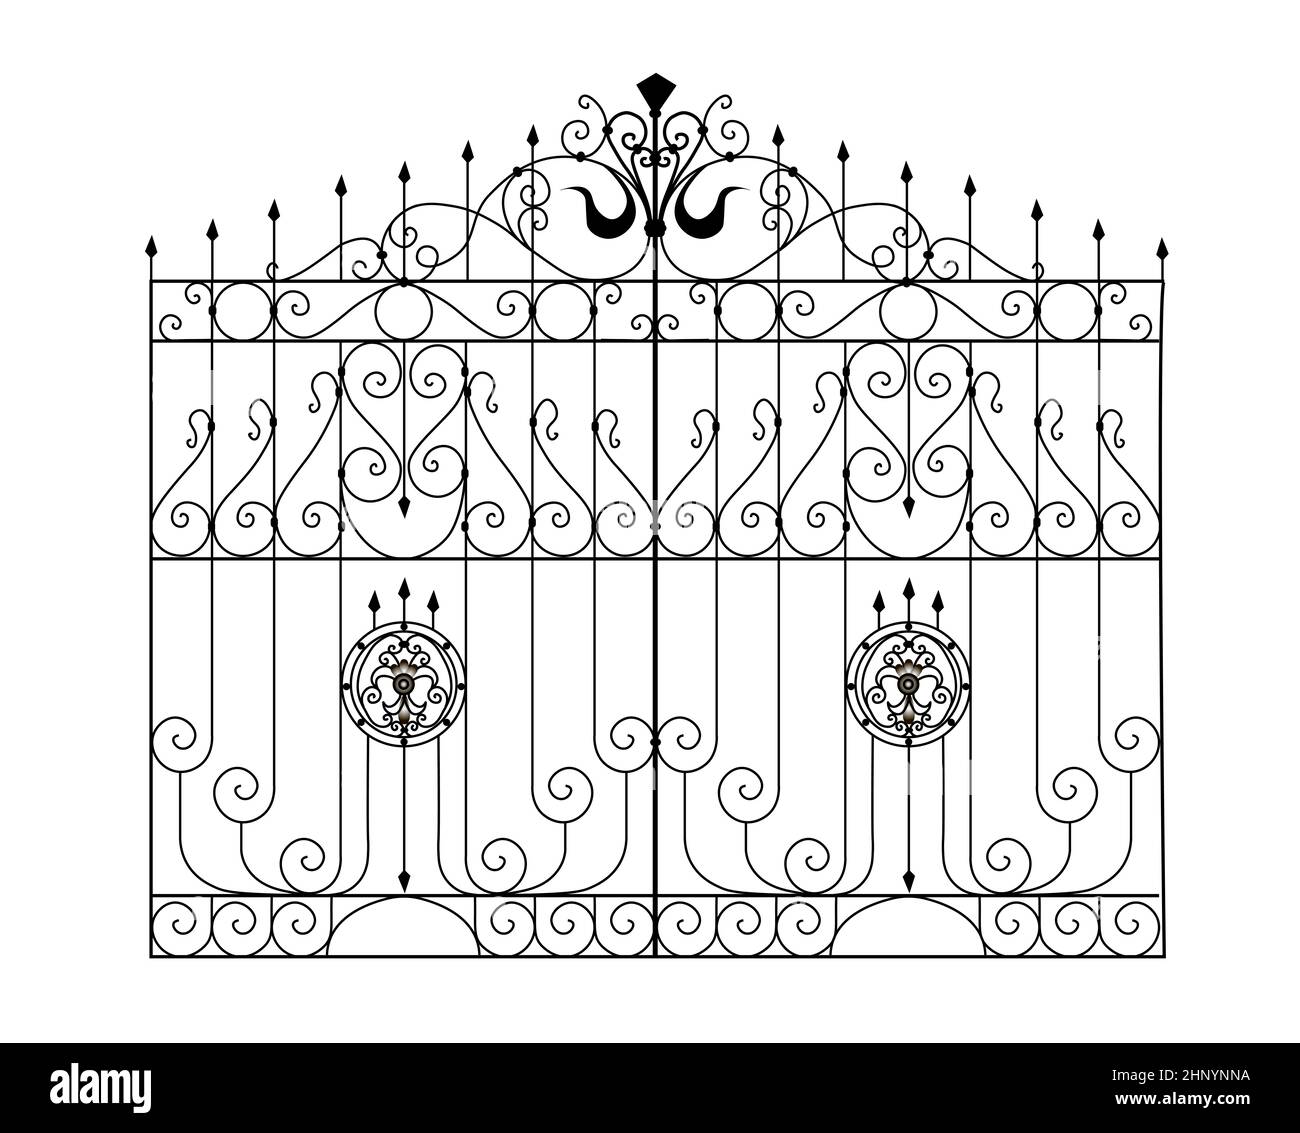 Croquis de portes métalliques, porte de jardin à deux feuilles, original, illustration de produits forgés Banque D'Images